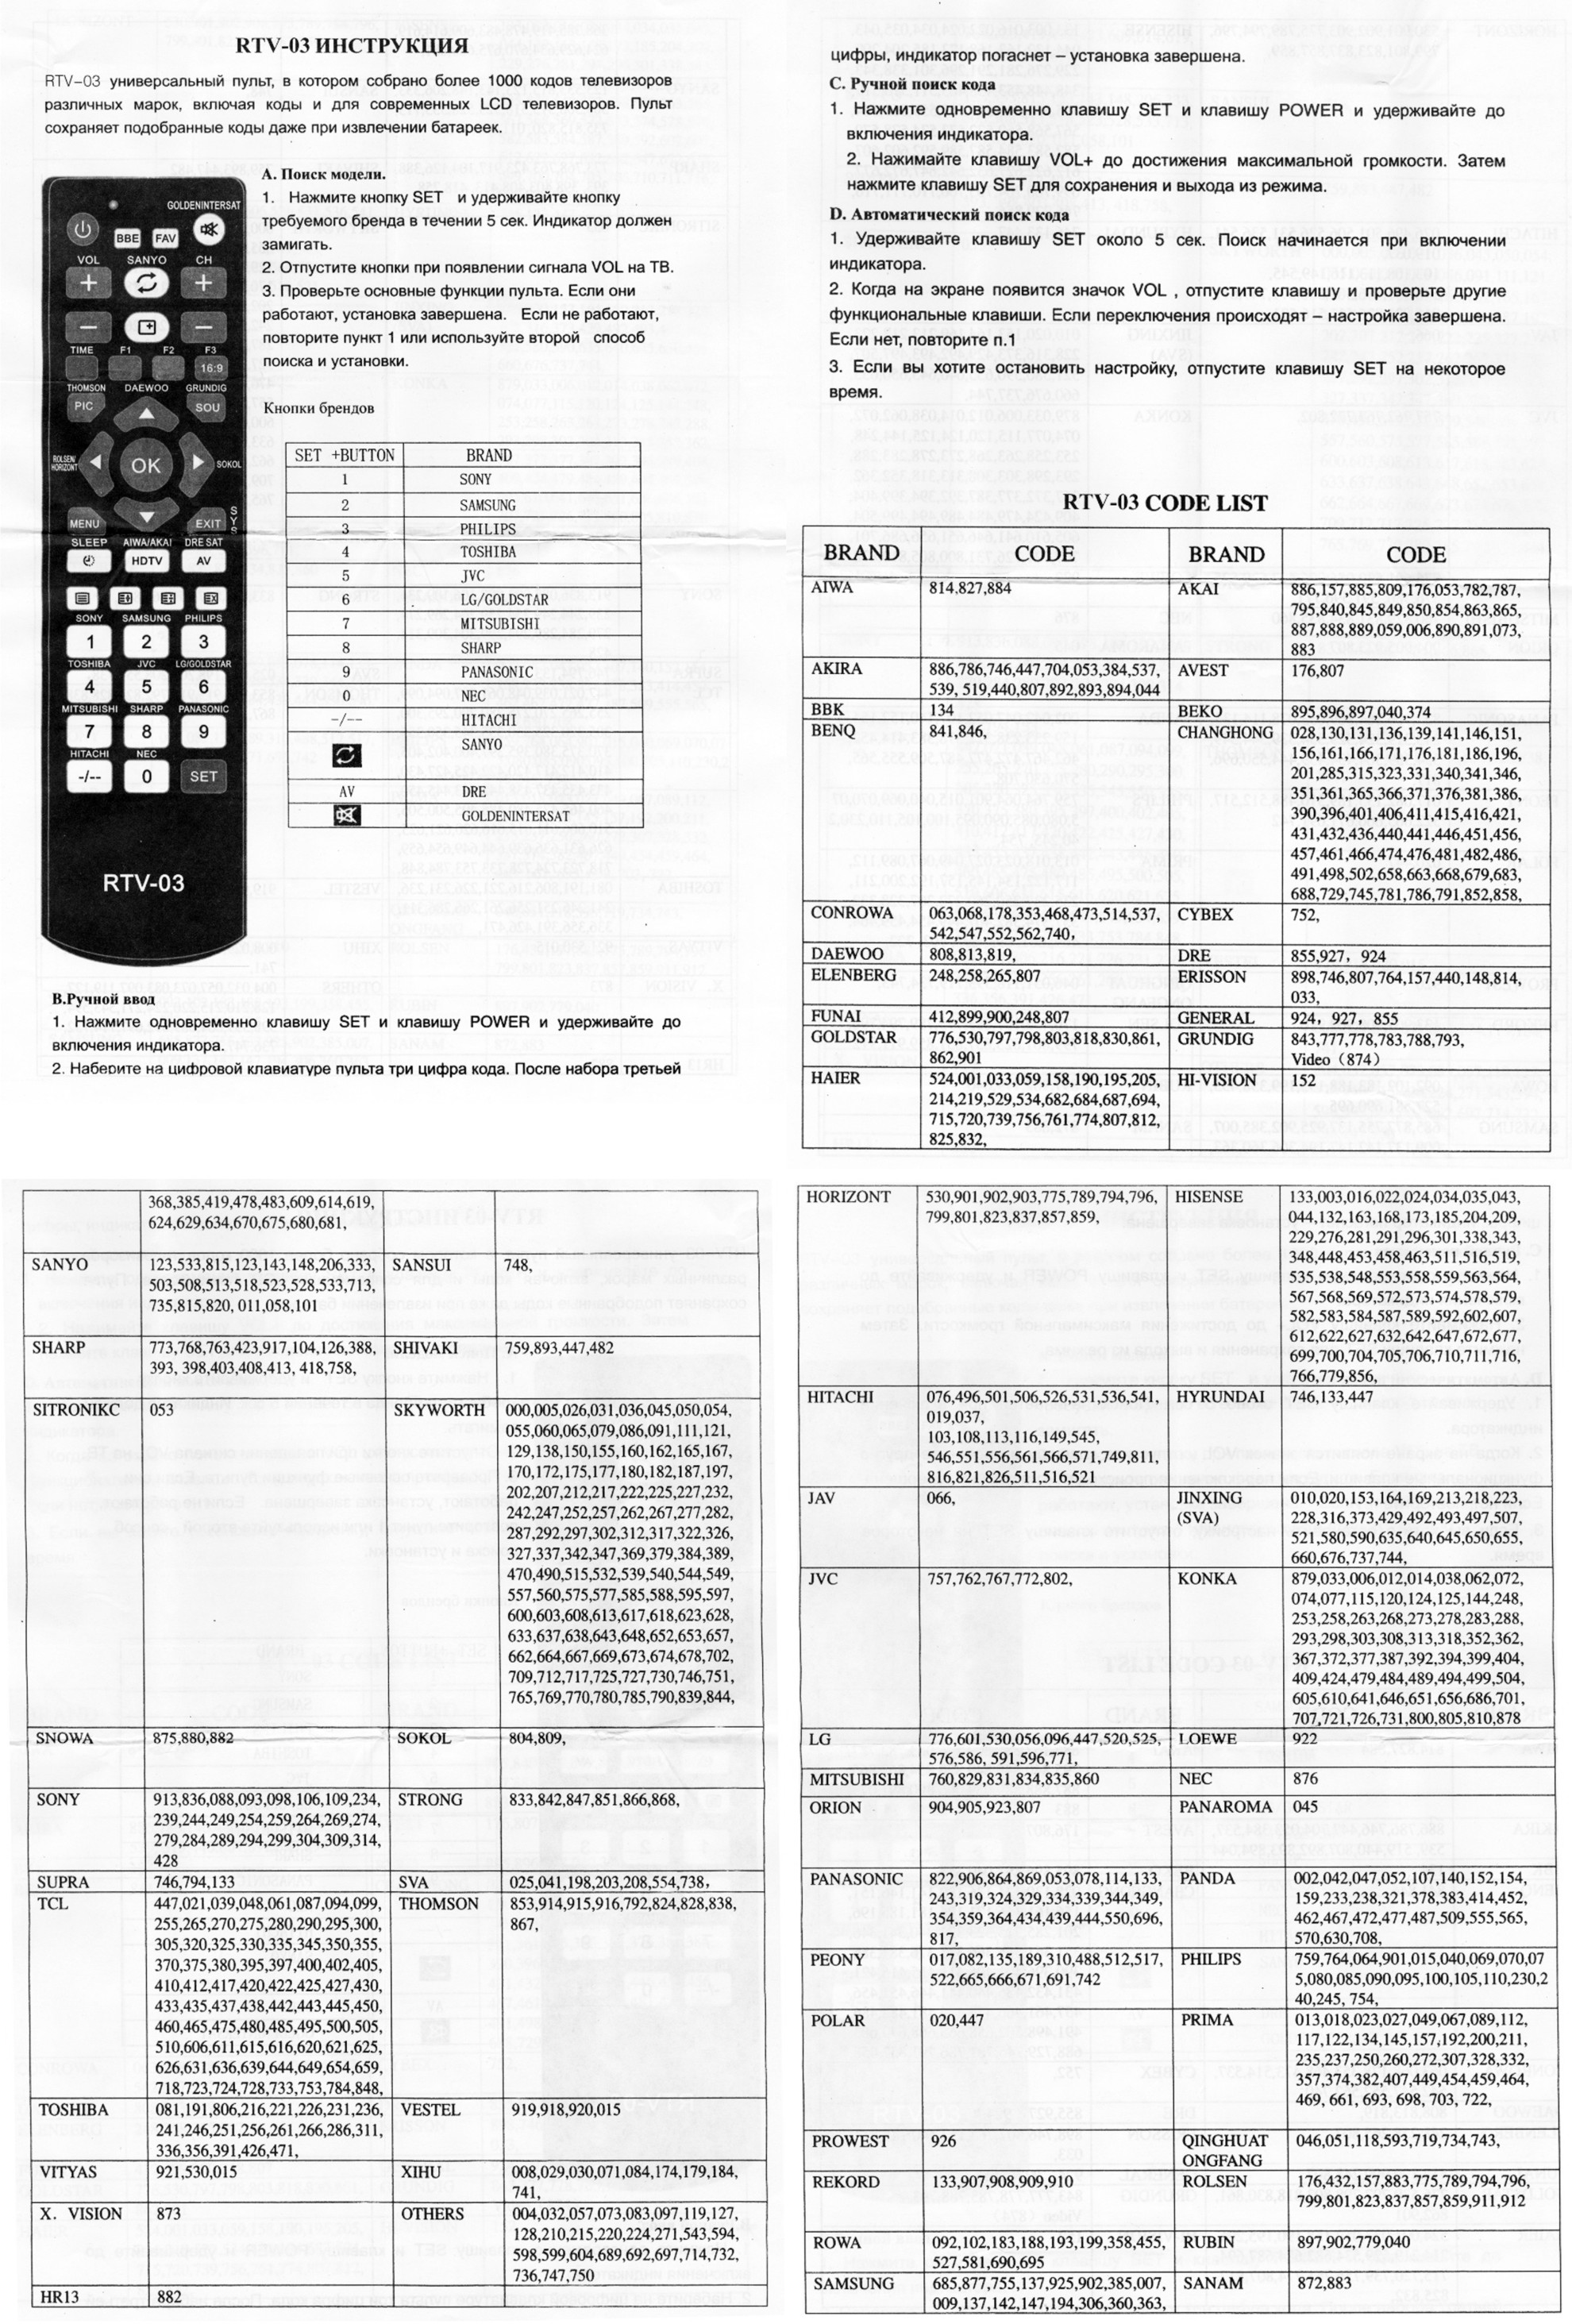 Supra коды пульта. Коды для универсального пульта для телевизора Sanyo. Коды для универсального пульта для телевизора Daewoo. Универсальный пульт для телевизора DZ-498 коды. Универсальный пульт RTV-03 для телевизора коды для Sharp.